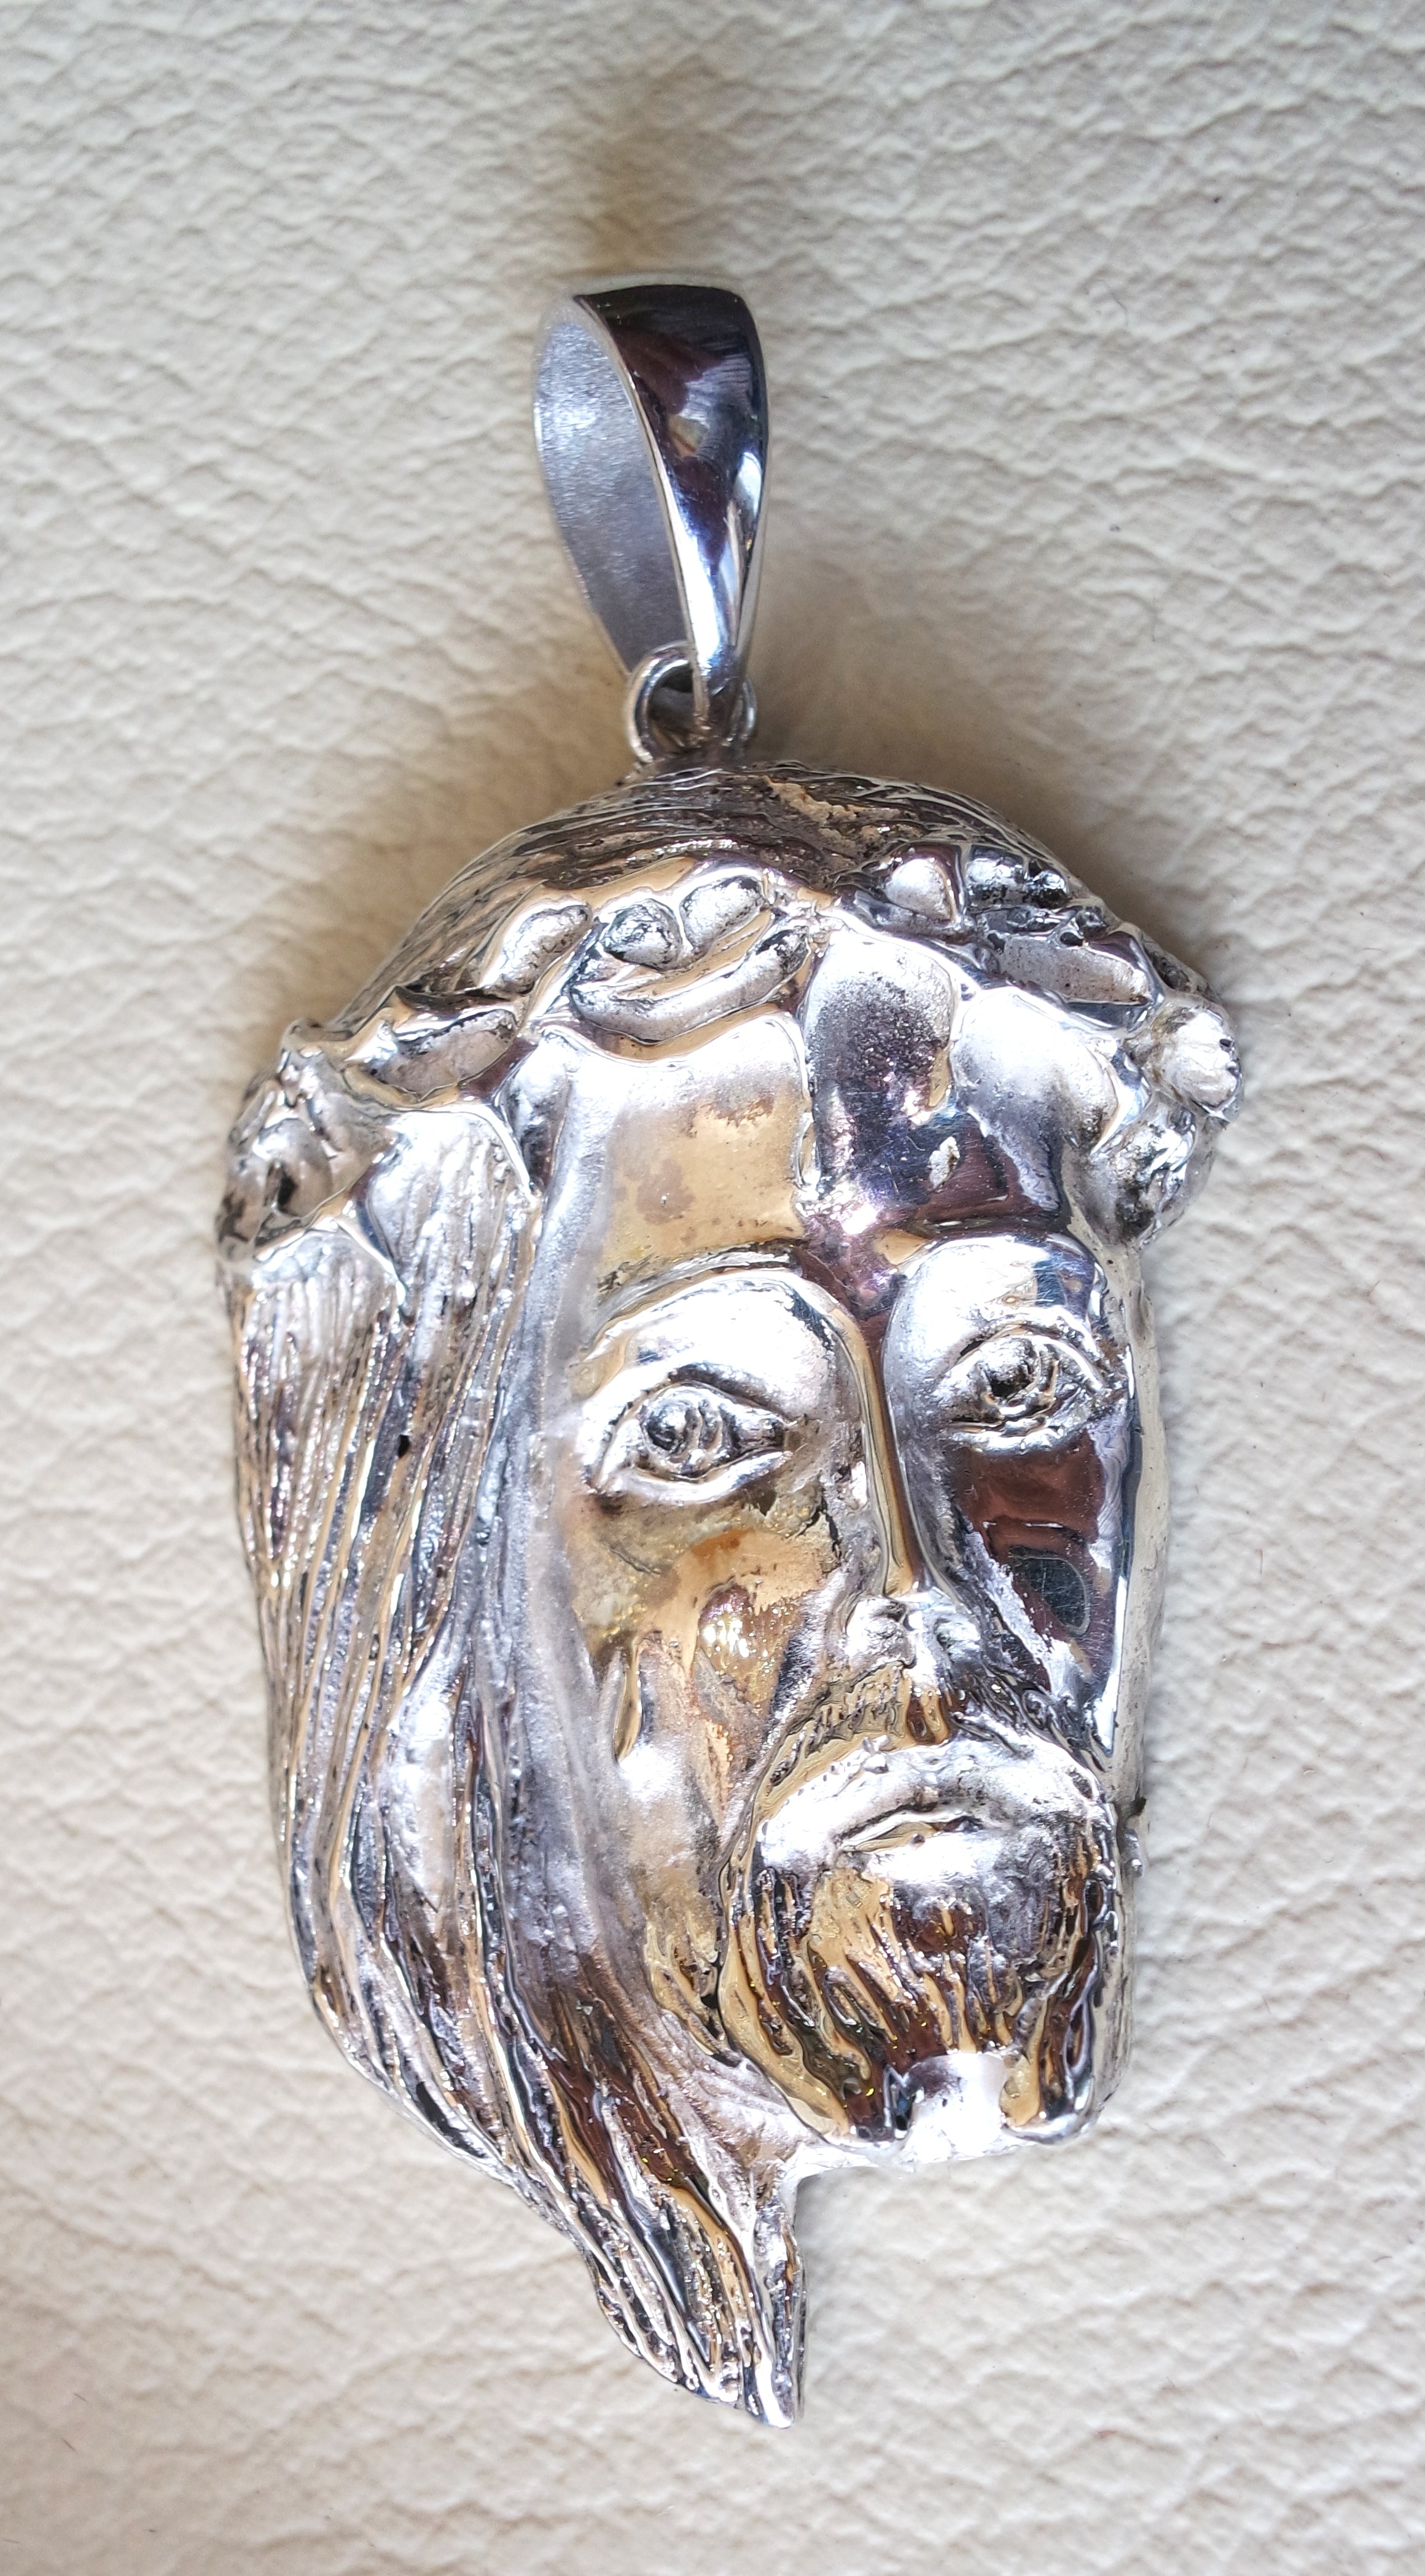 Jésus Christ tête de visage énorme pendentif Sterling argent 925 Moyen Orient bijoux christianisme Vintage main lourde expédition express